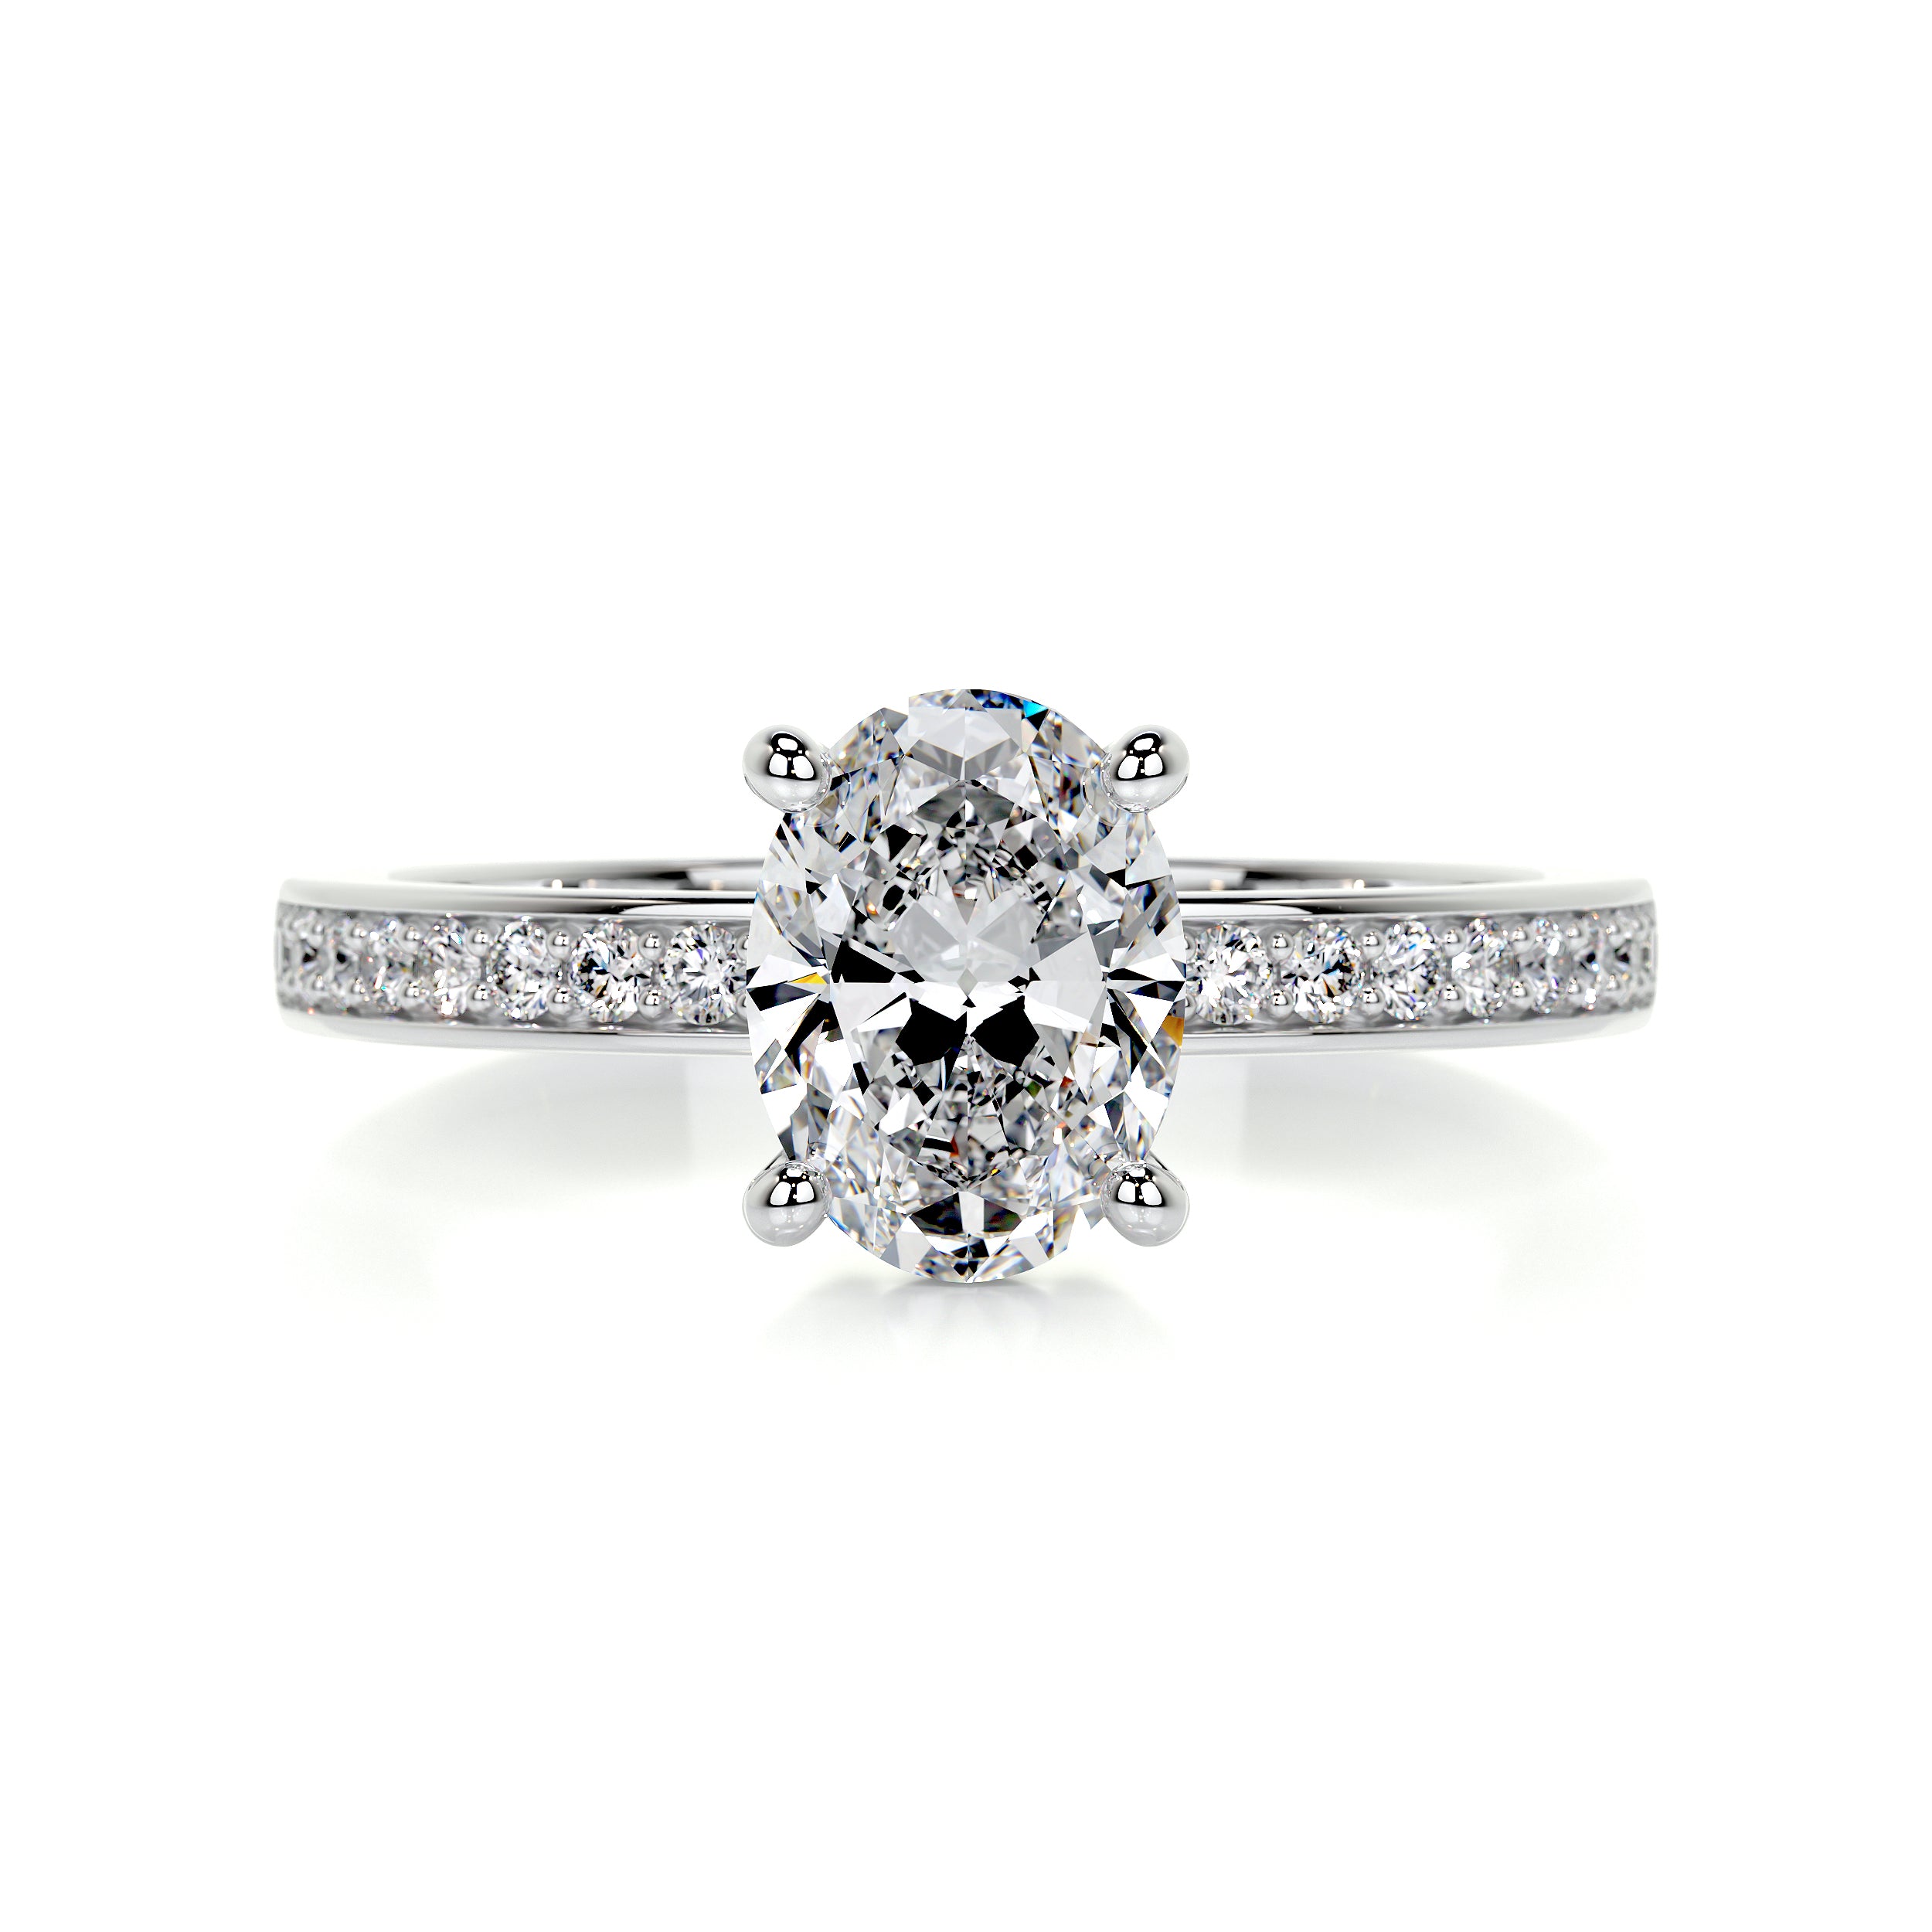 Giselle Diamond Engagement Ring   (1.16 Carat) -14K White Gold